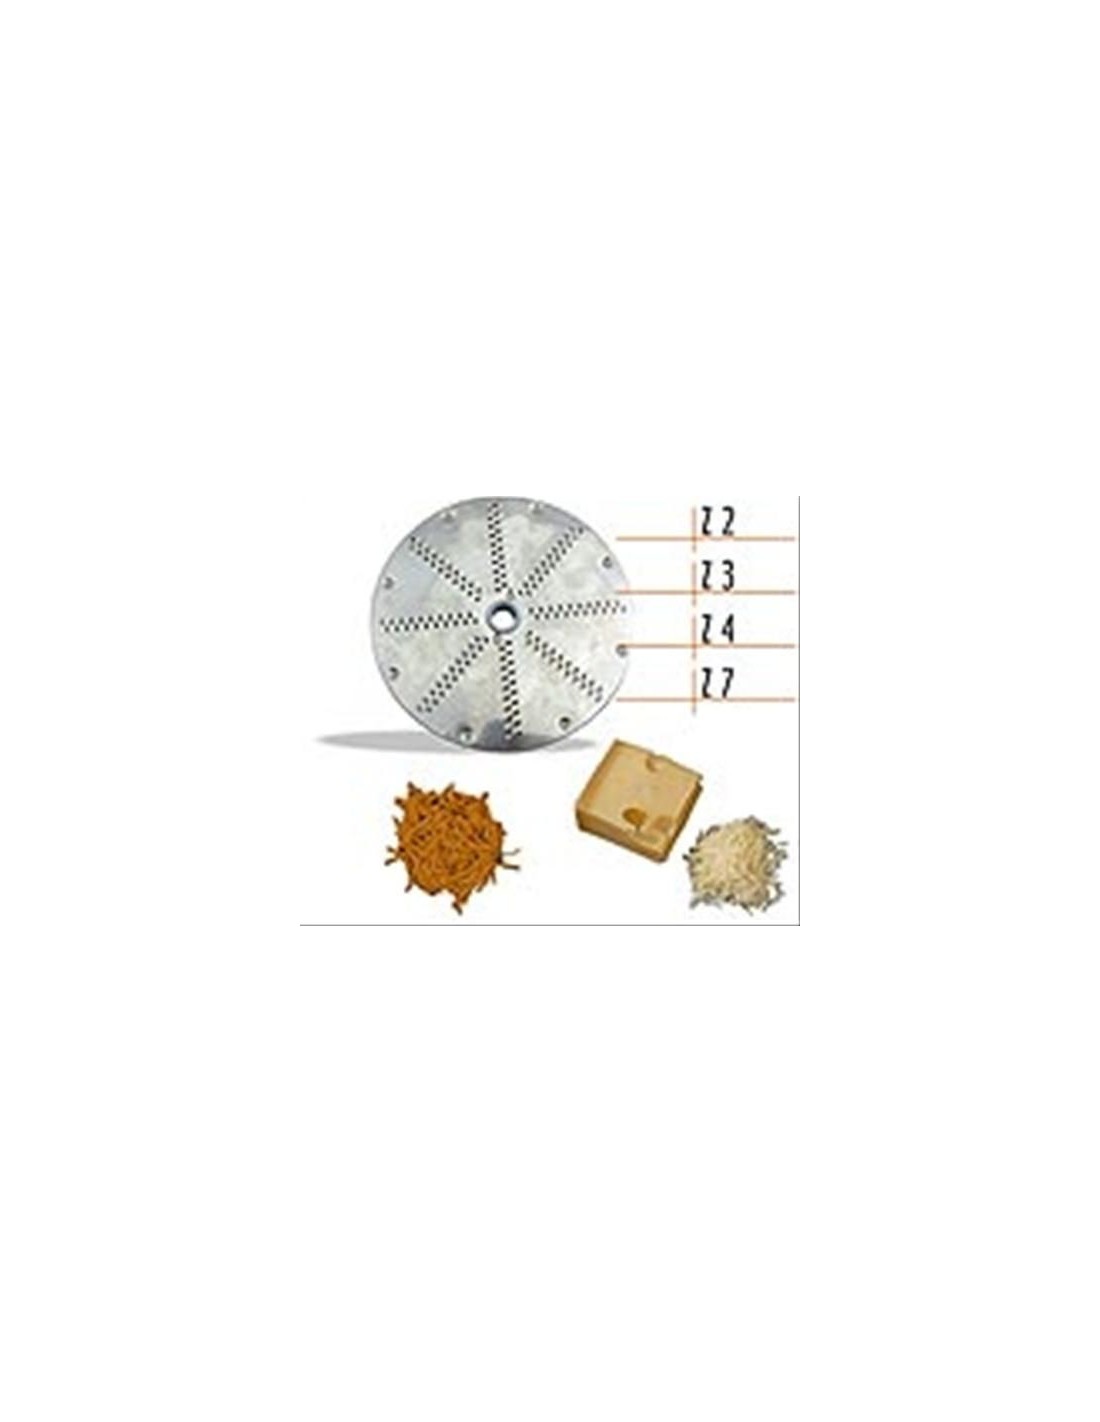 Disc cutter - For TAGLIUZZARE and SFILACCIARE - Cutting thickness mm 2